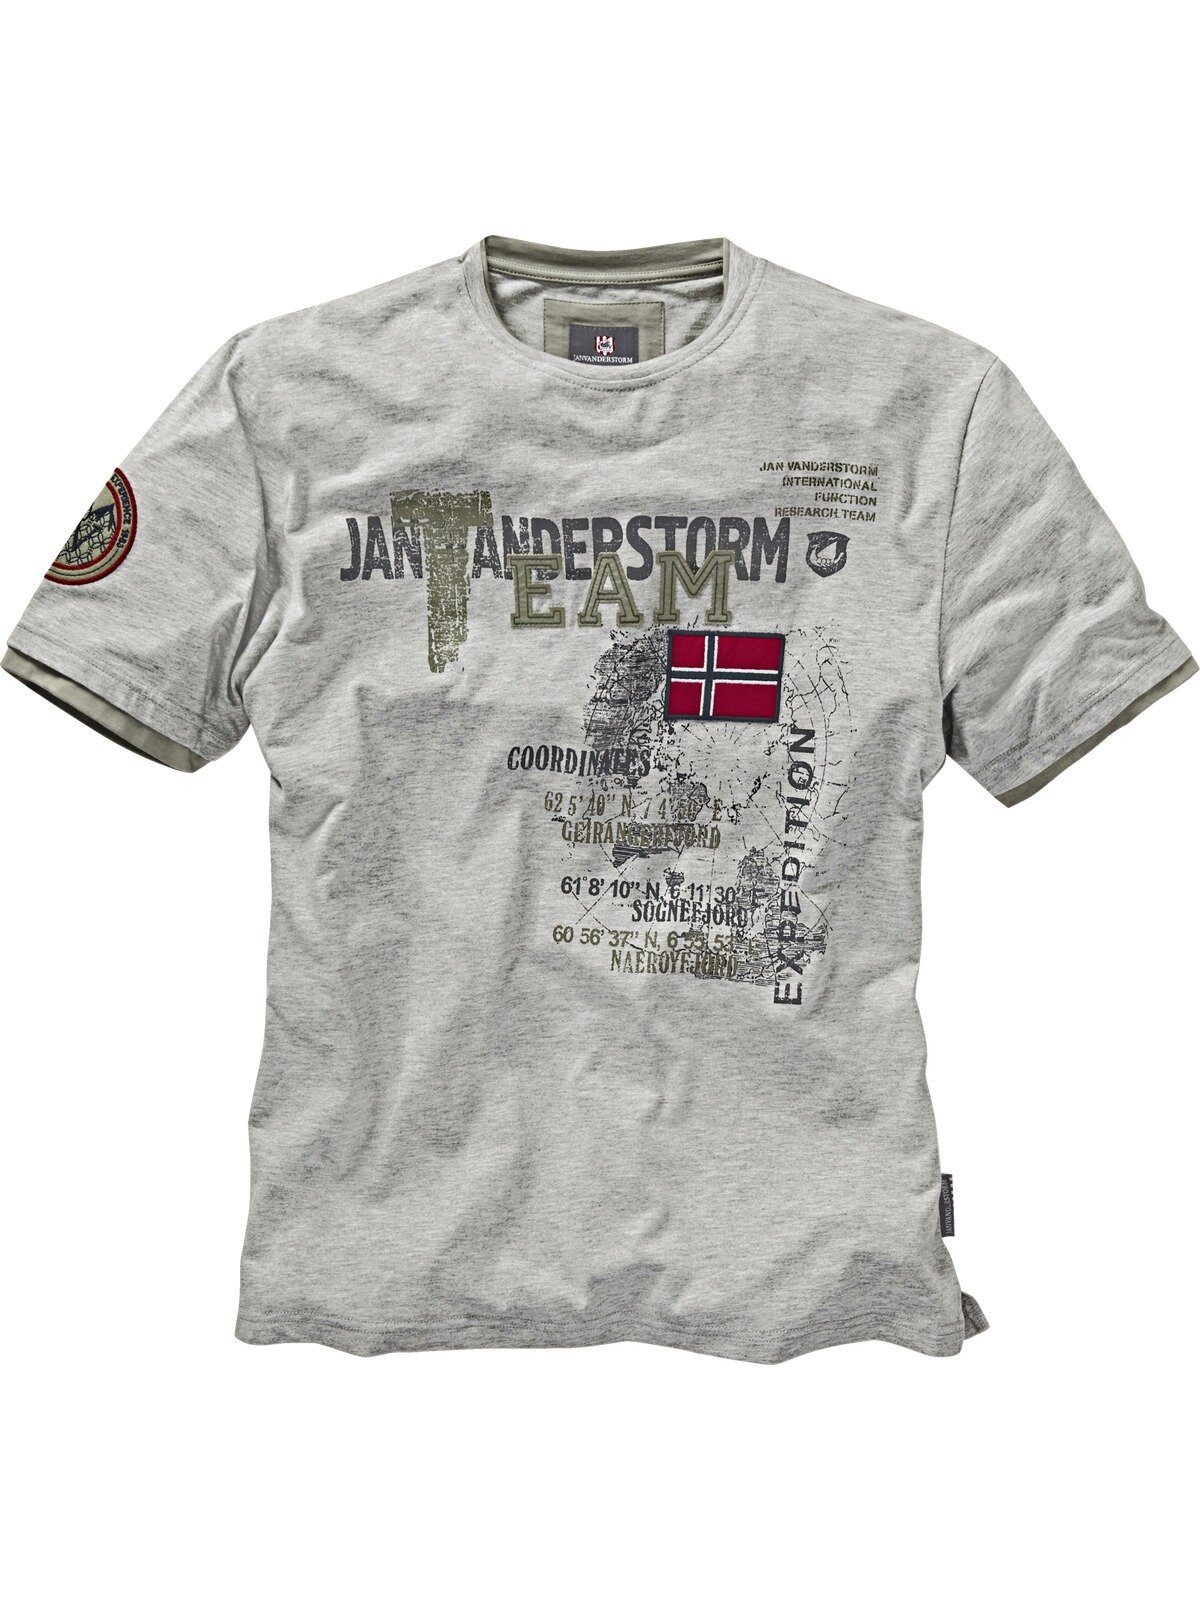 SÖLVE aus Jan Vanderstorm robustem grau T-Shirt Baumwolljersey